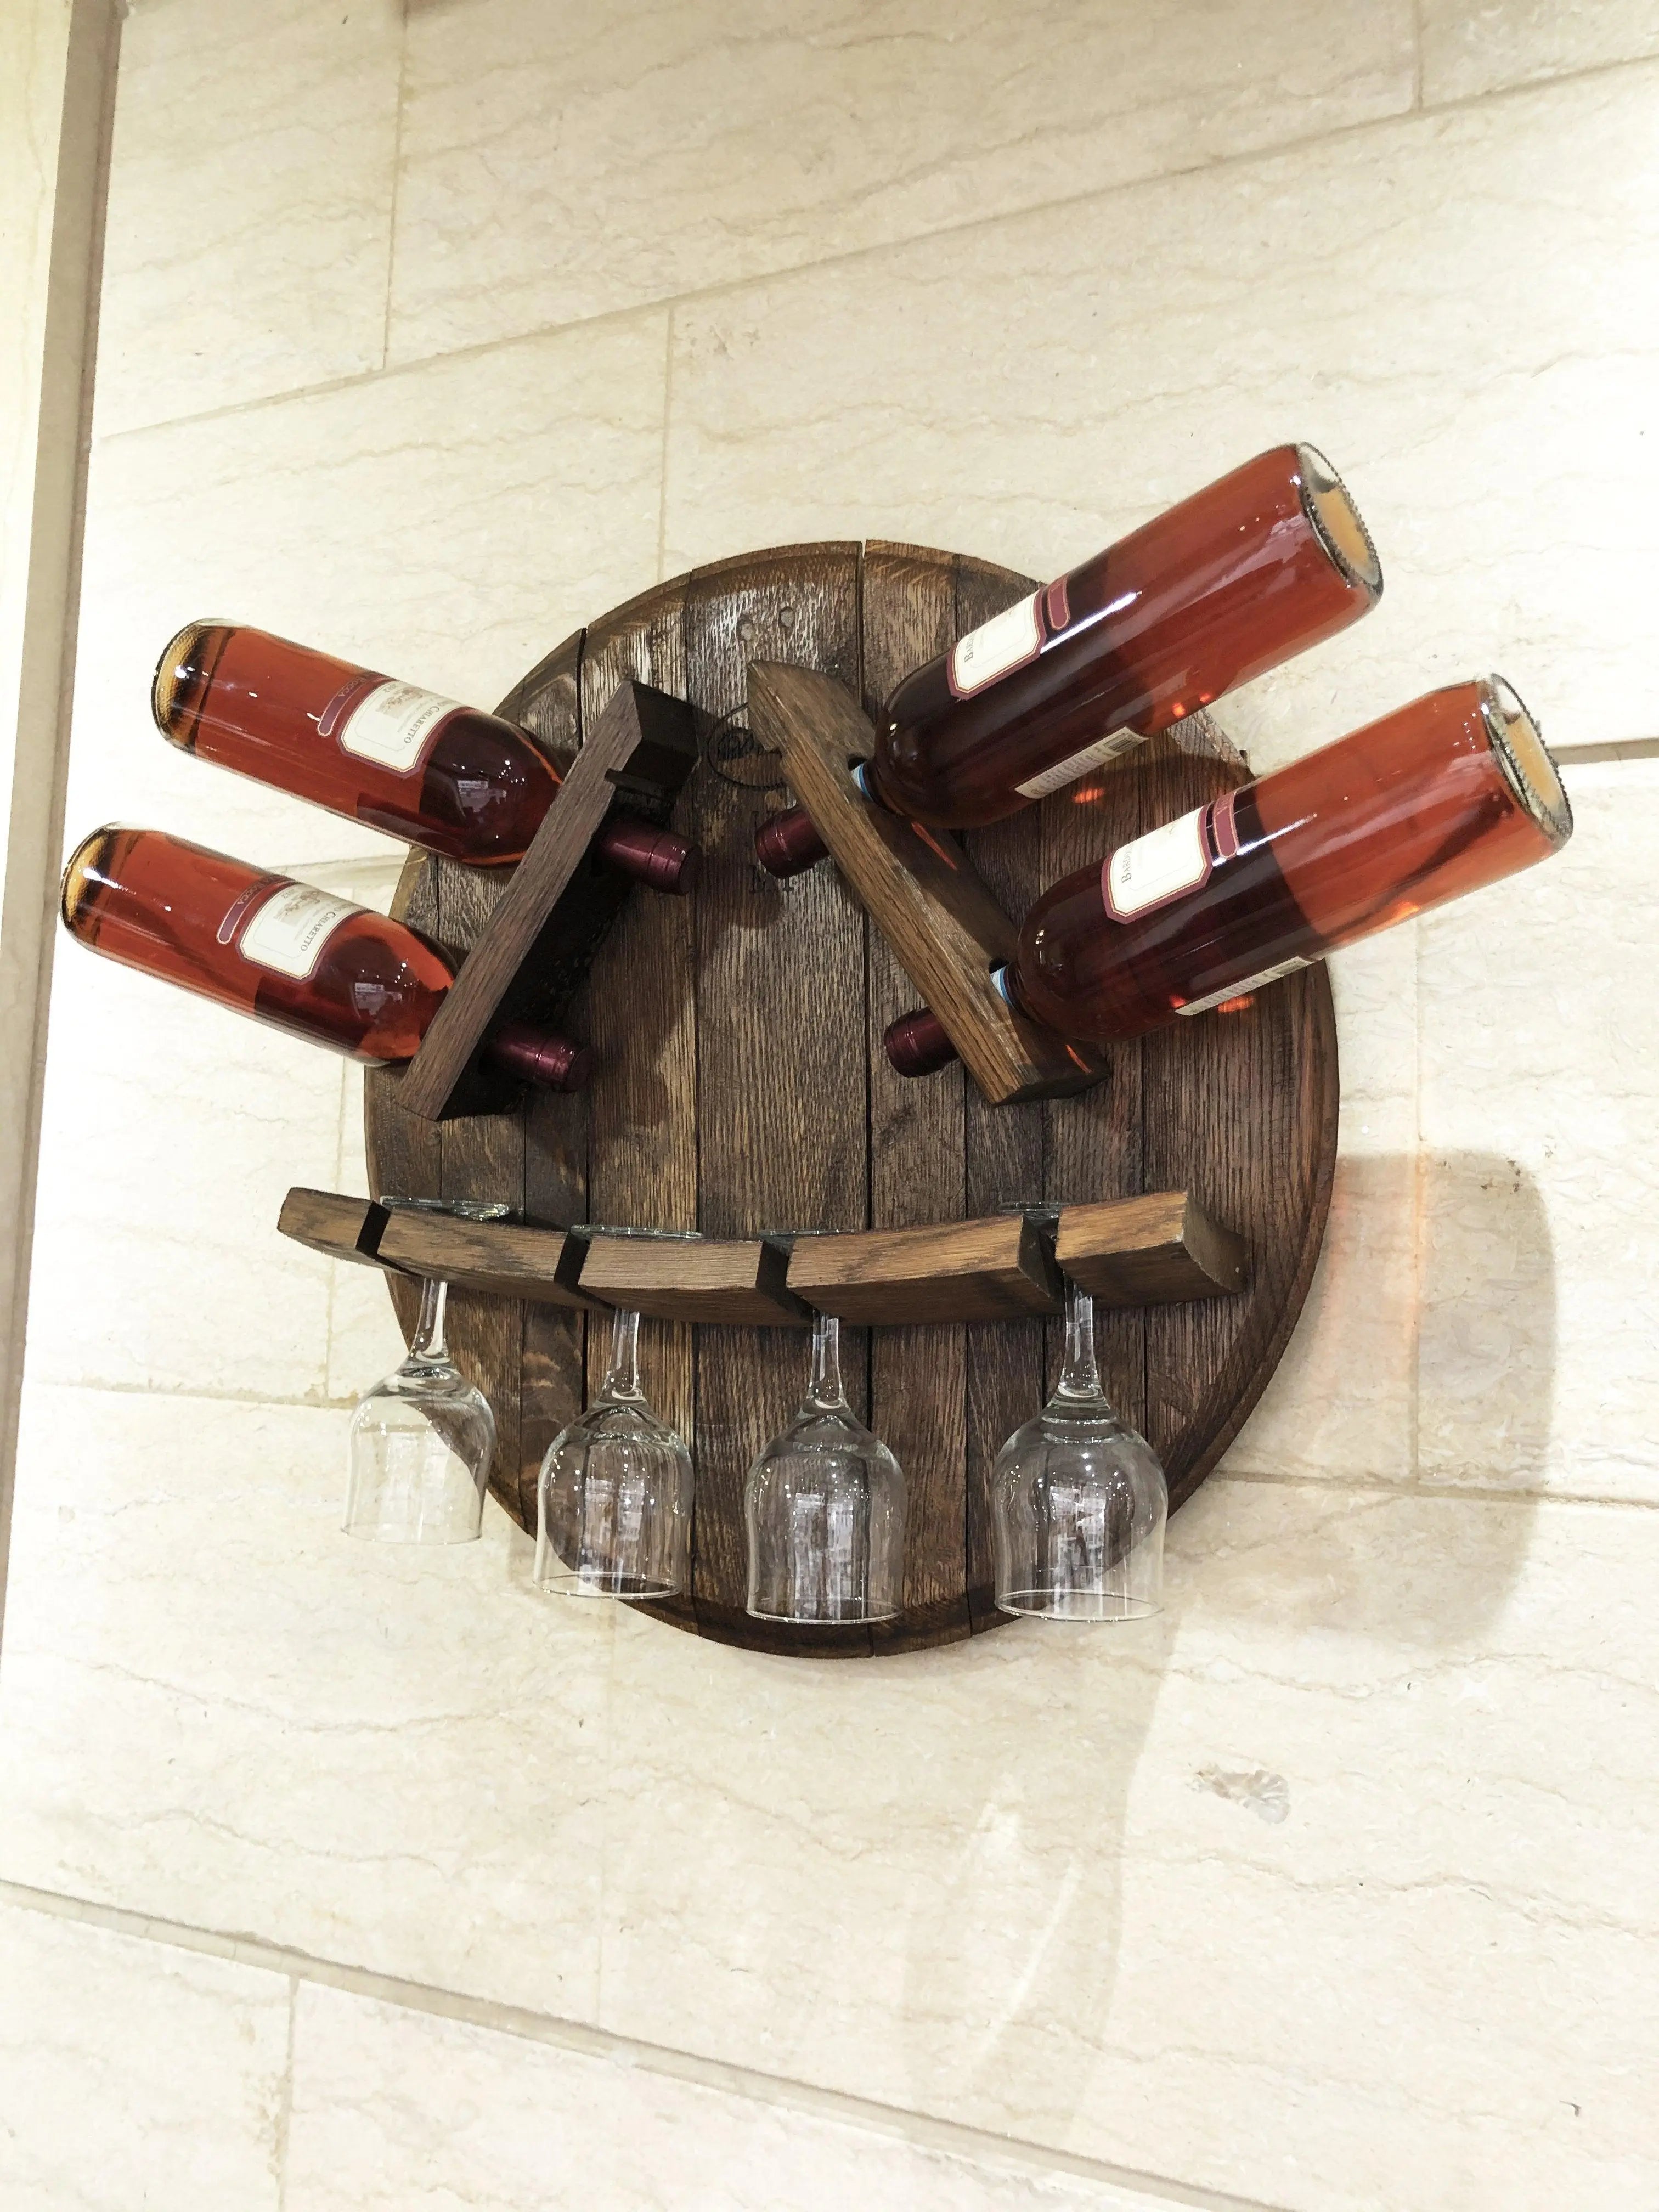 Oaksip Wooden Wine & Bourbon Glass (2 pack) – Platterful